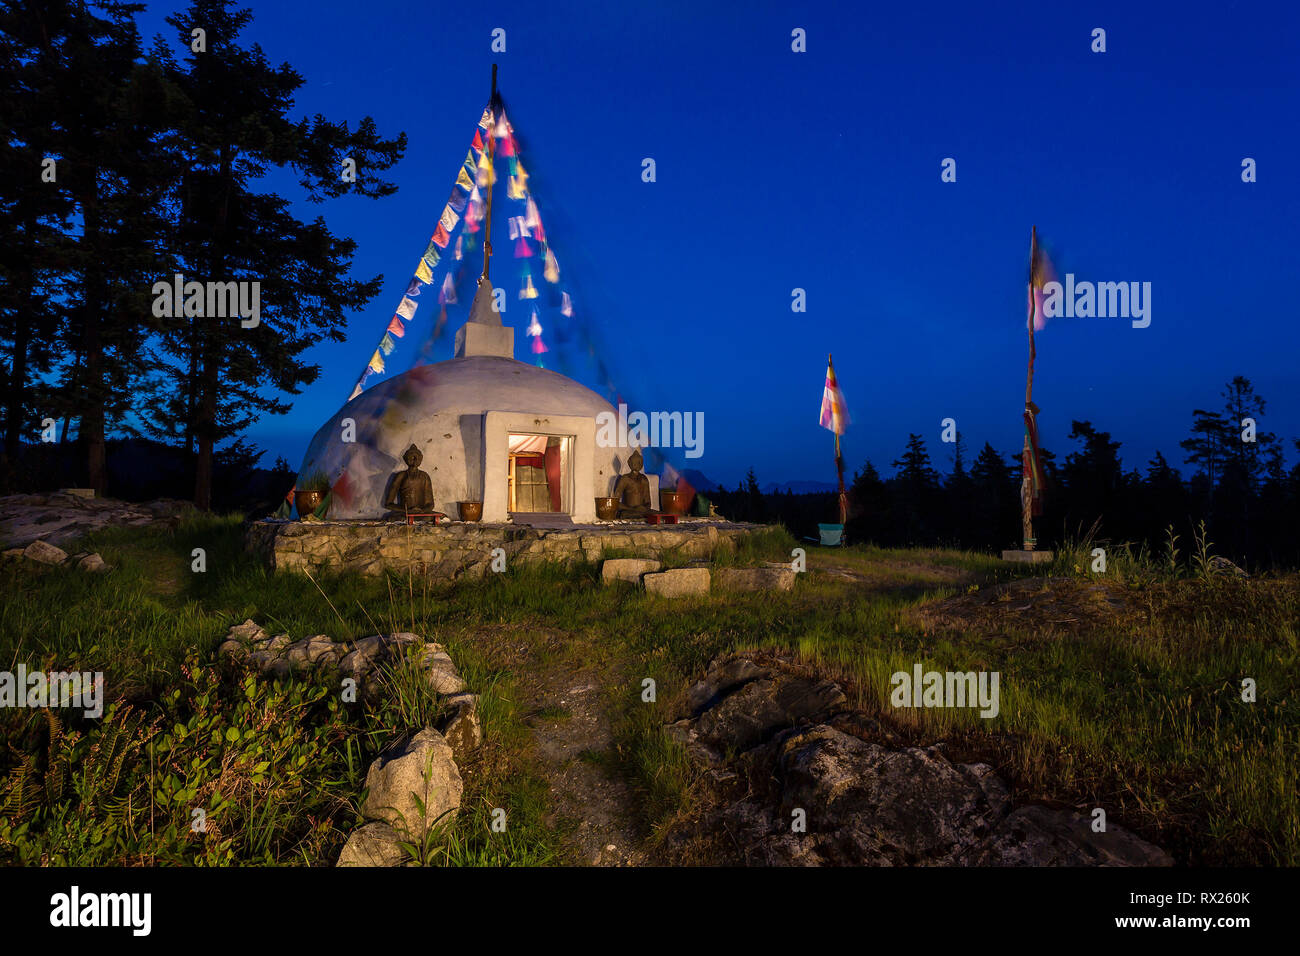 Uno stupa buddisti con la preghiera bandiere al vento sono accese fino a notte in un rifugio su Cortes Island, isola di Cortes, British Columbia, Canada Foto Stock